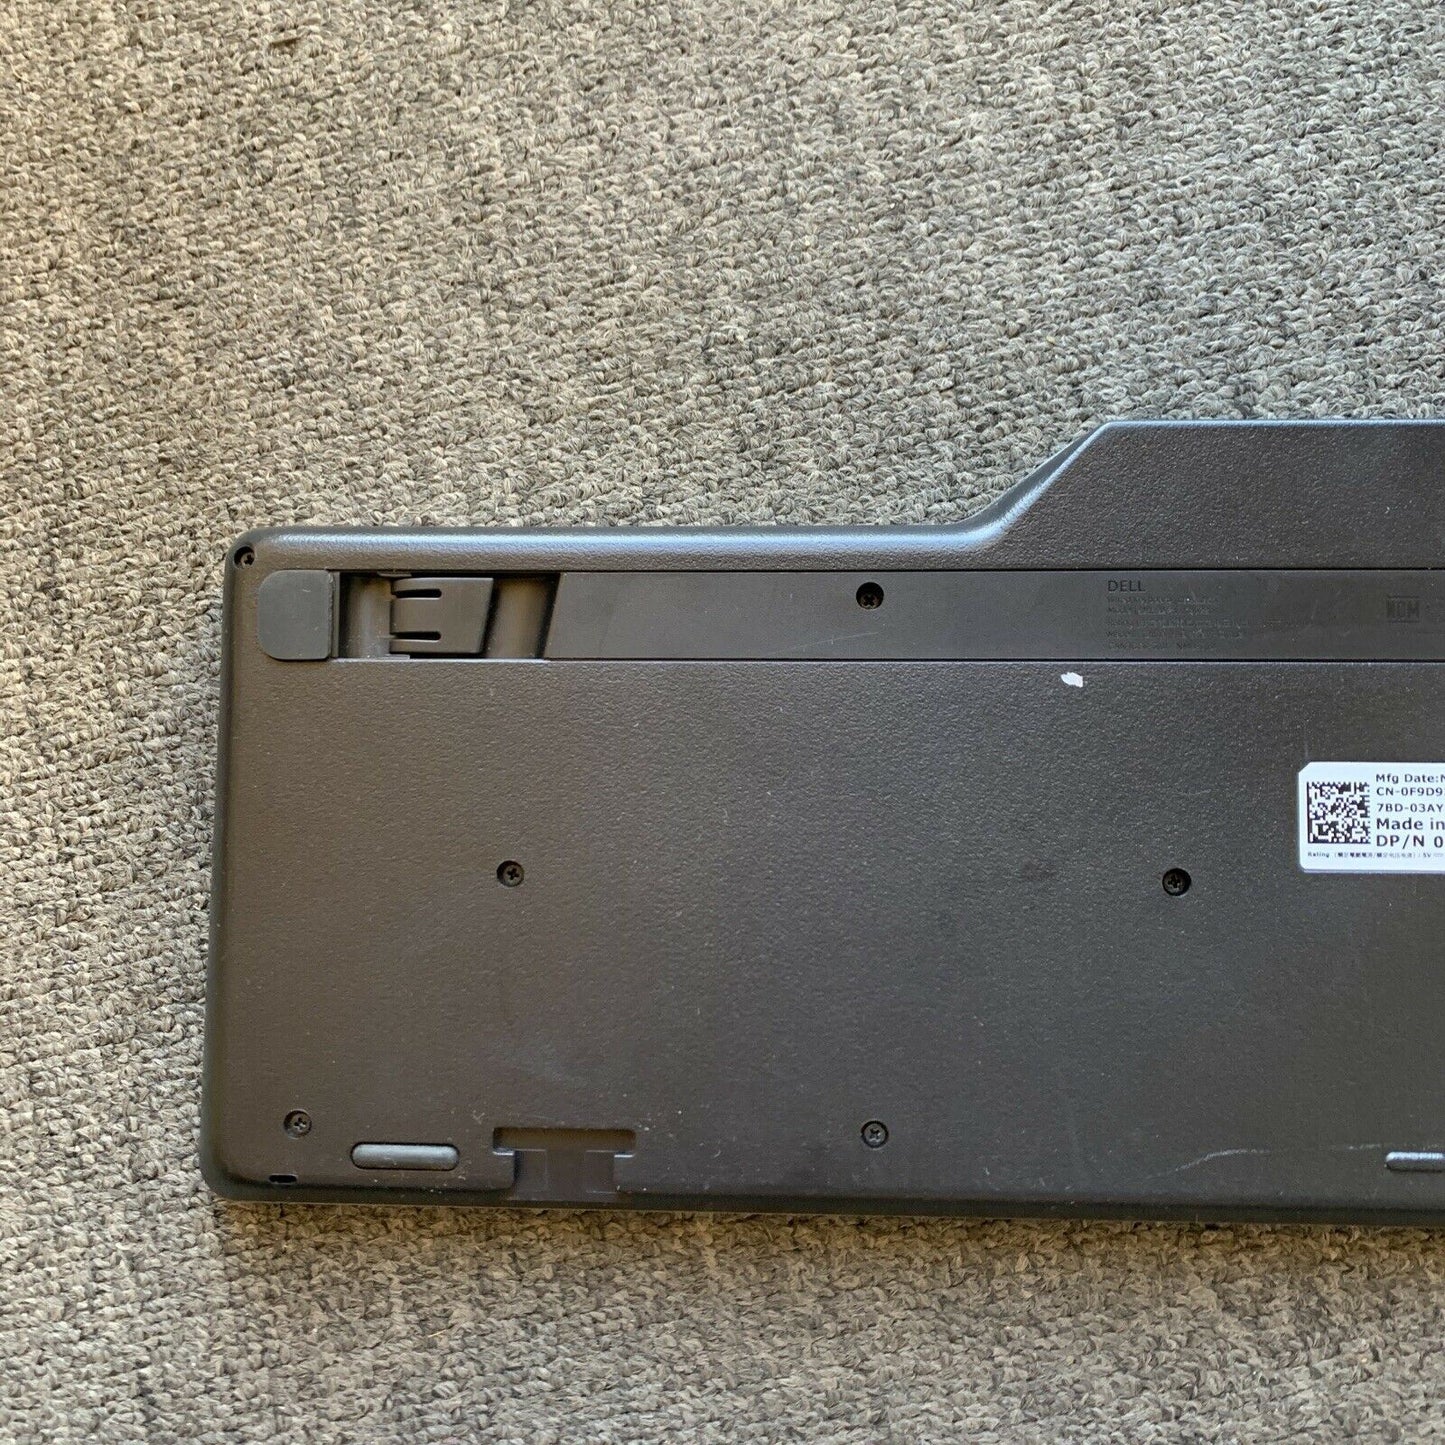 Dell KB522p Multimedia Black Wired Keyboard 2-Port USB Hub